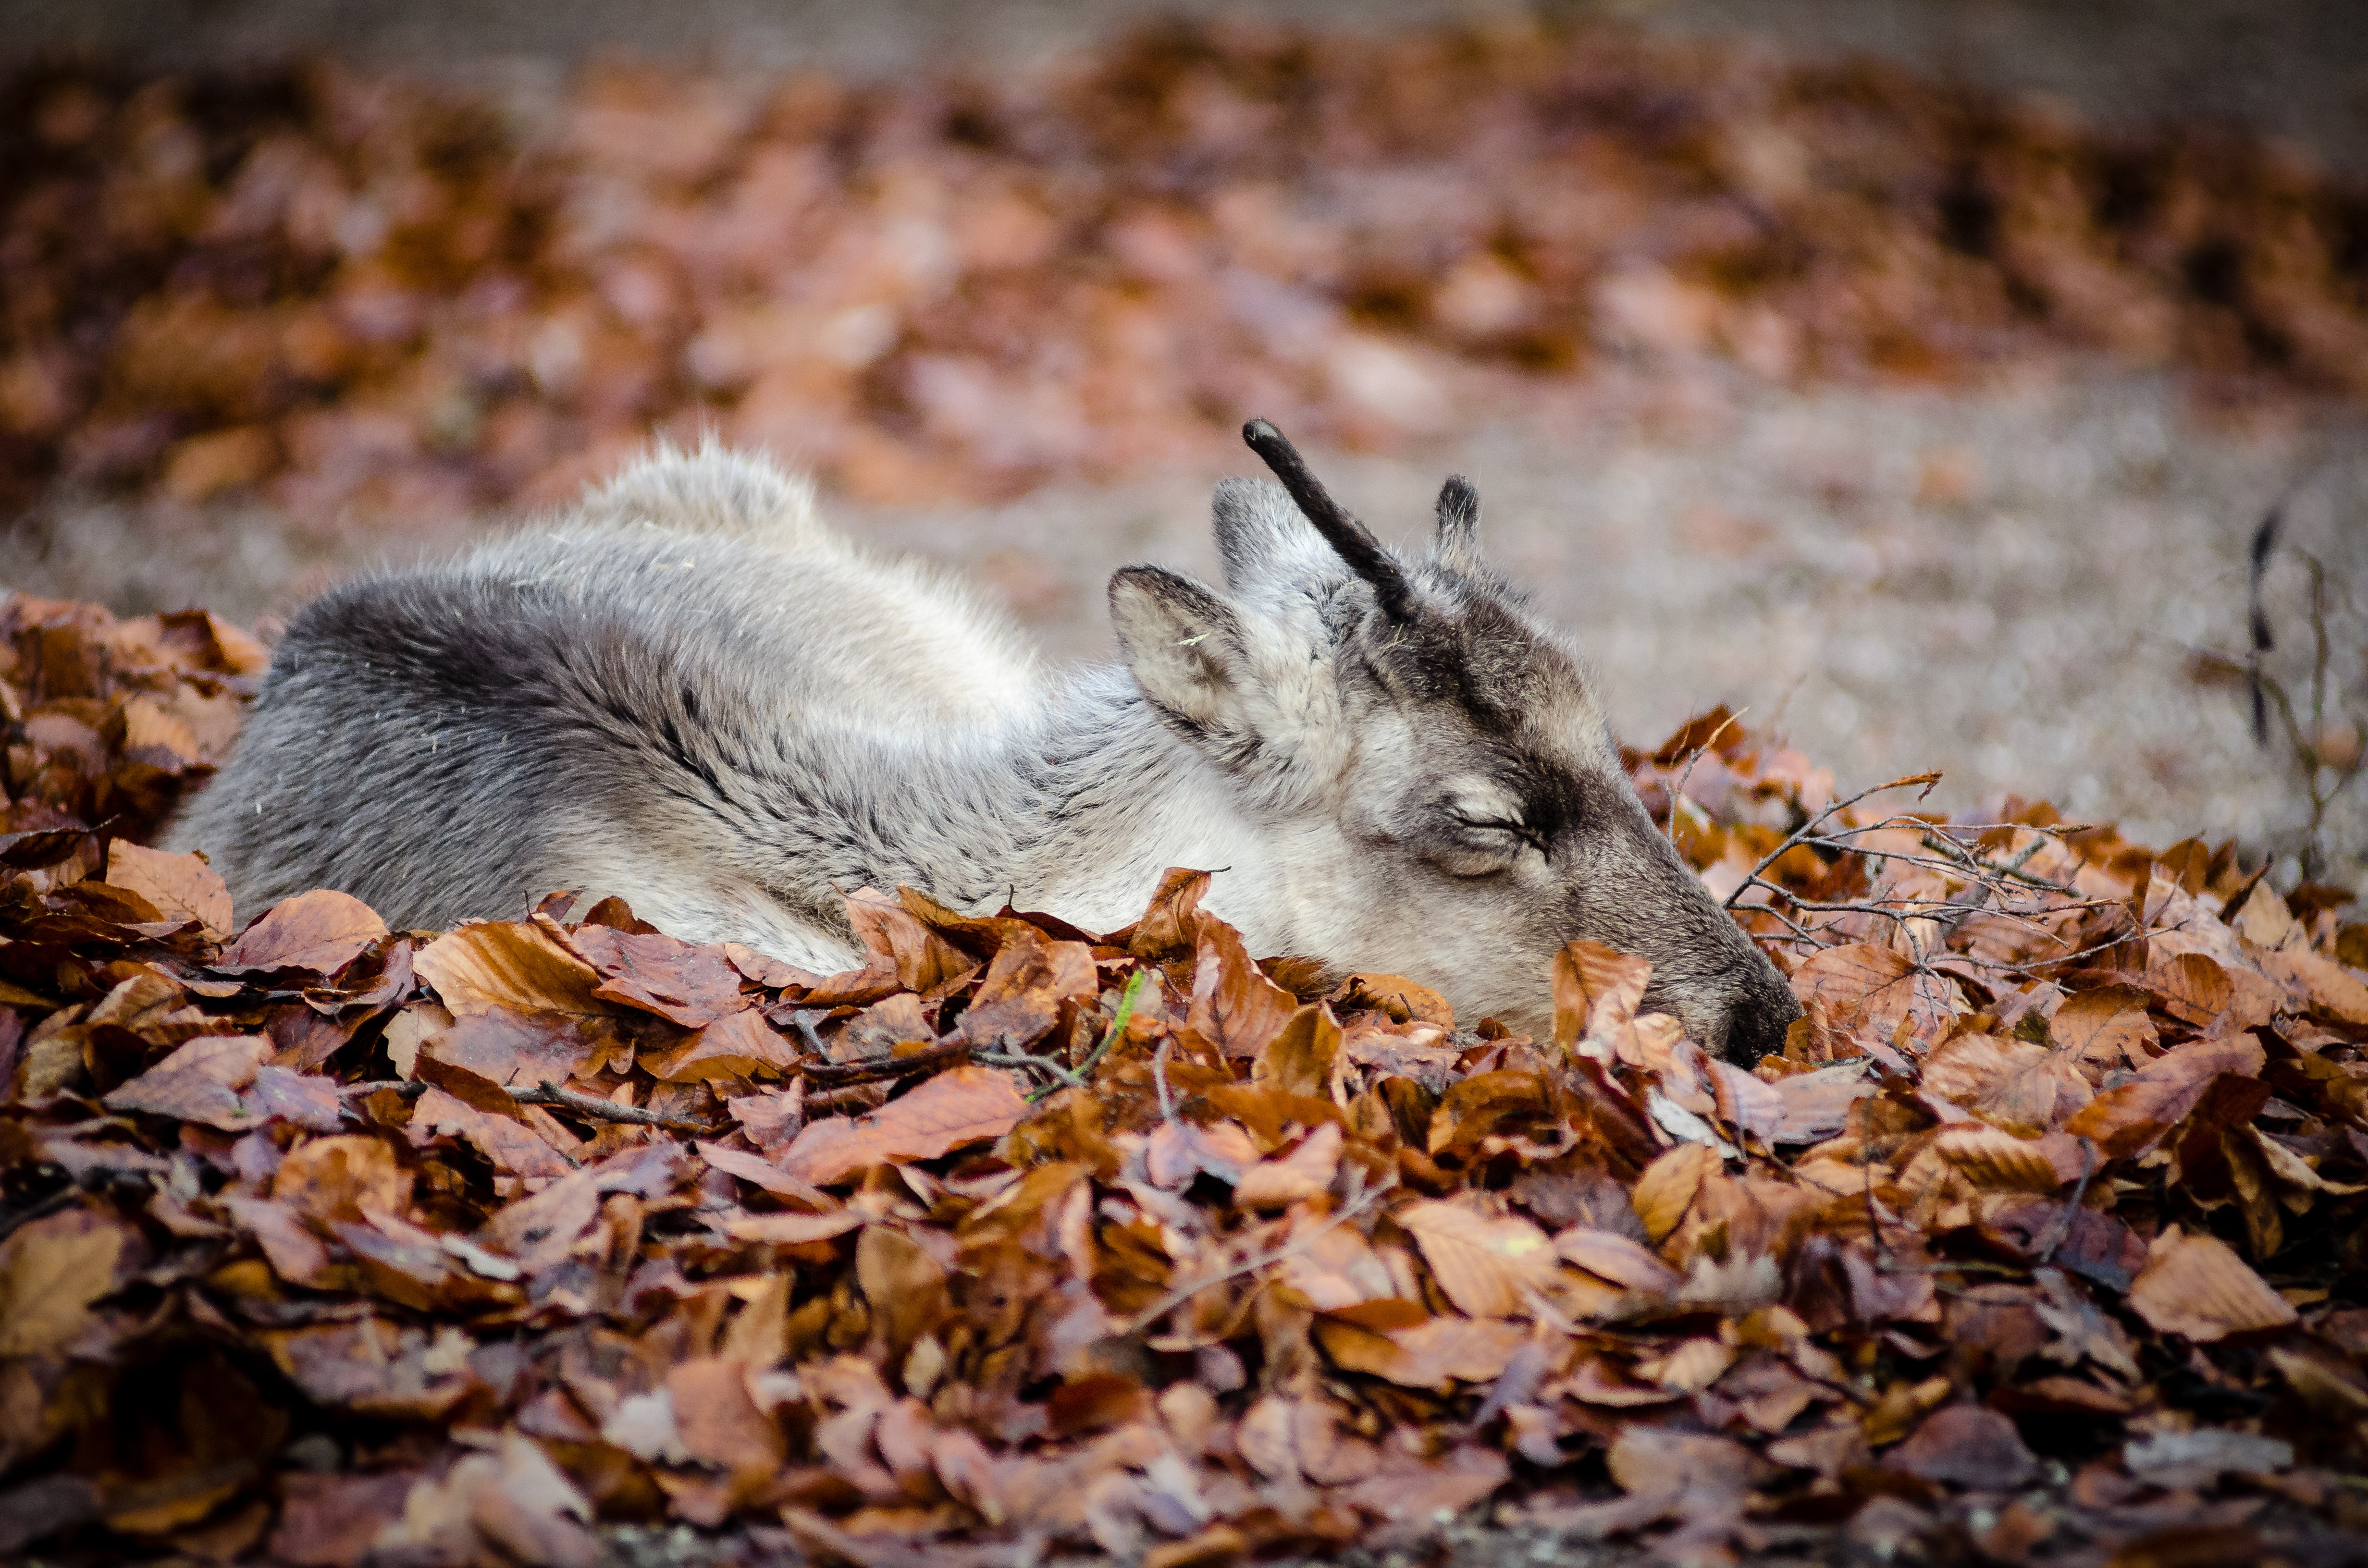 Reindeer lying on leaves